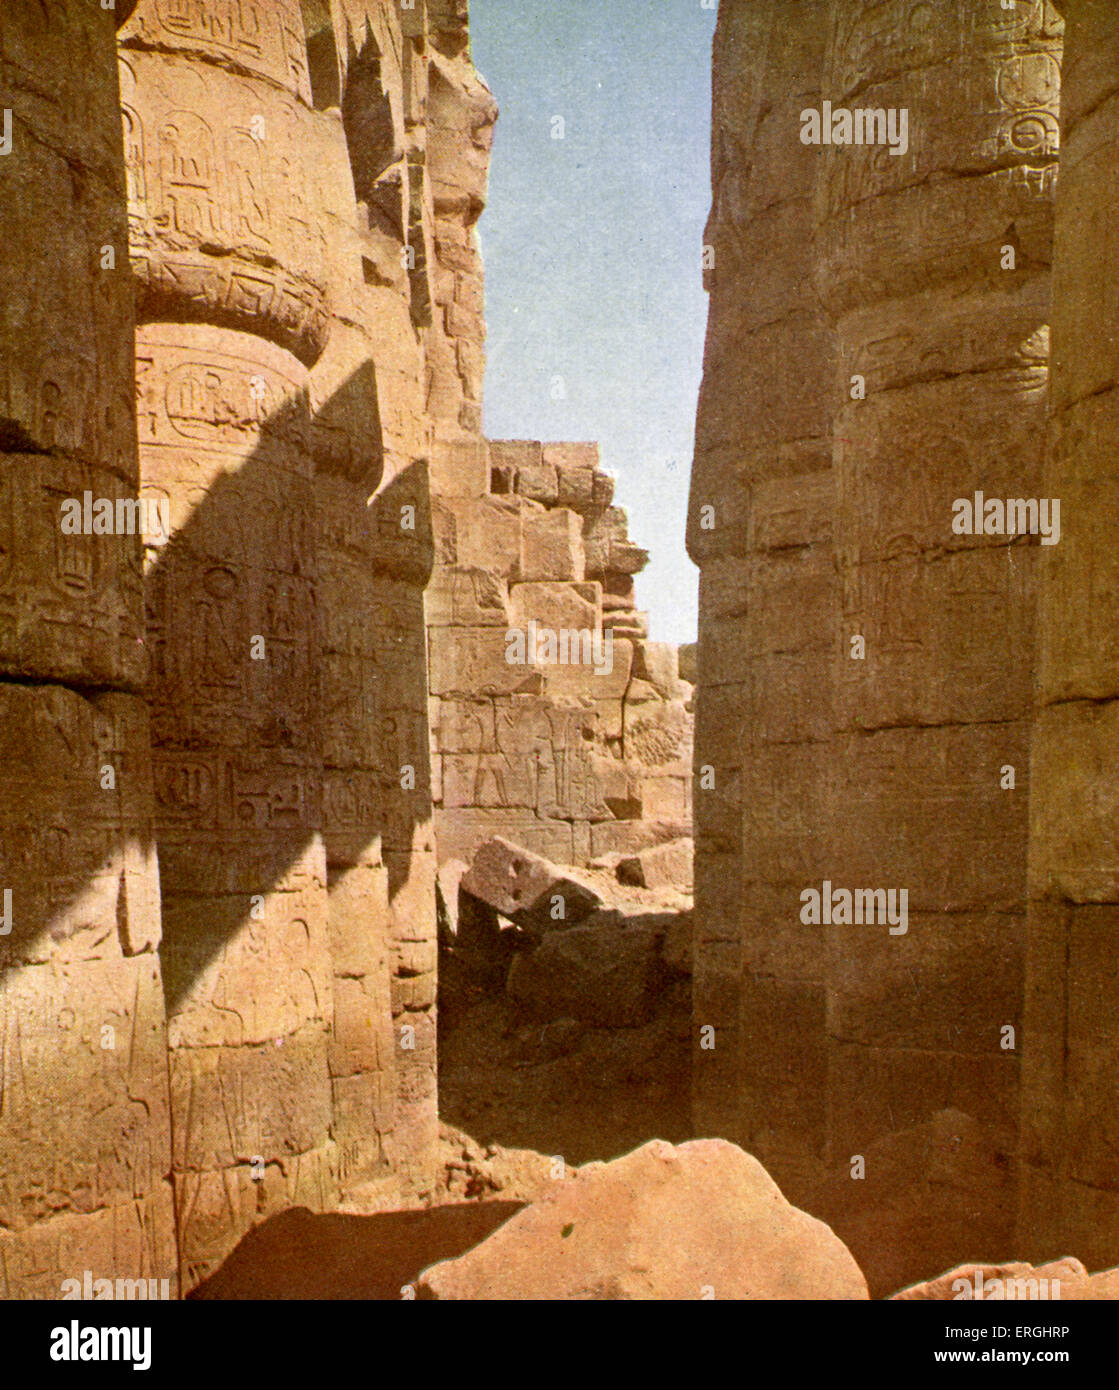 Tempio di Karnak complessa, mix di templi cariati, cappelle, tralicci e di altri edifici, Egitto. Fotografia dal 1923 Prenota. Foto Stock